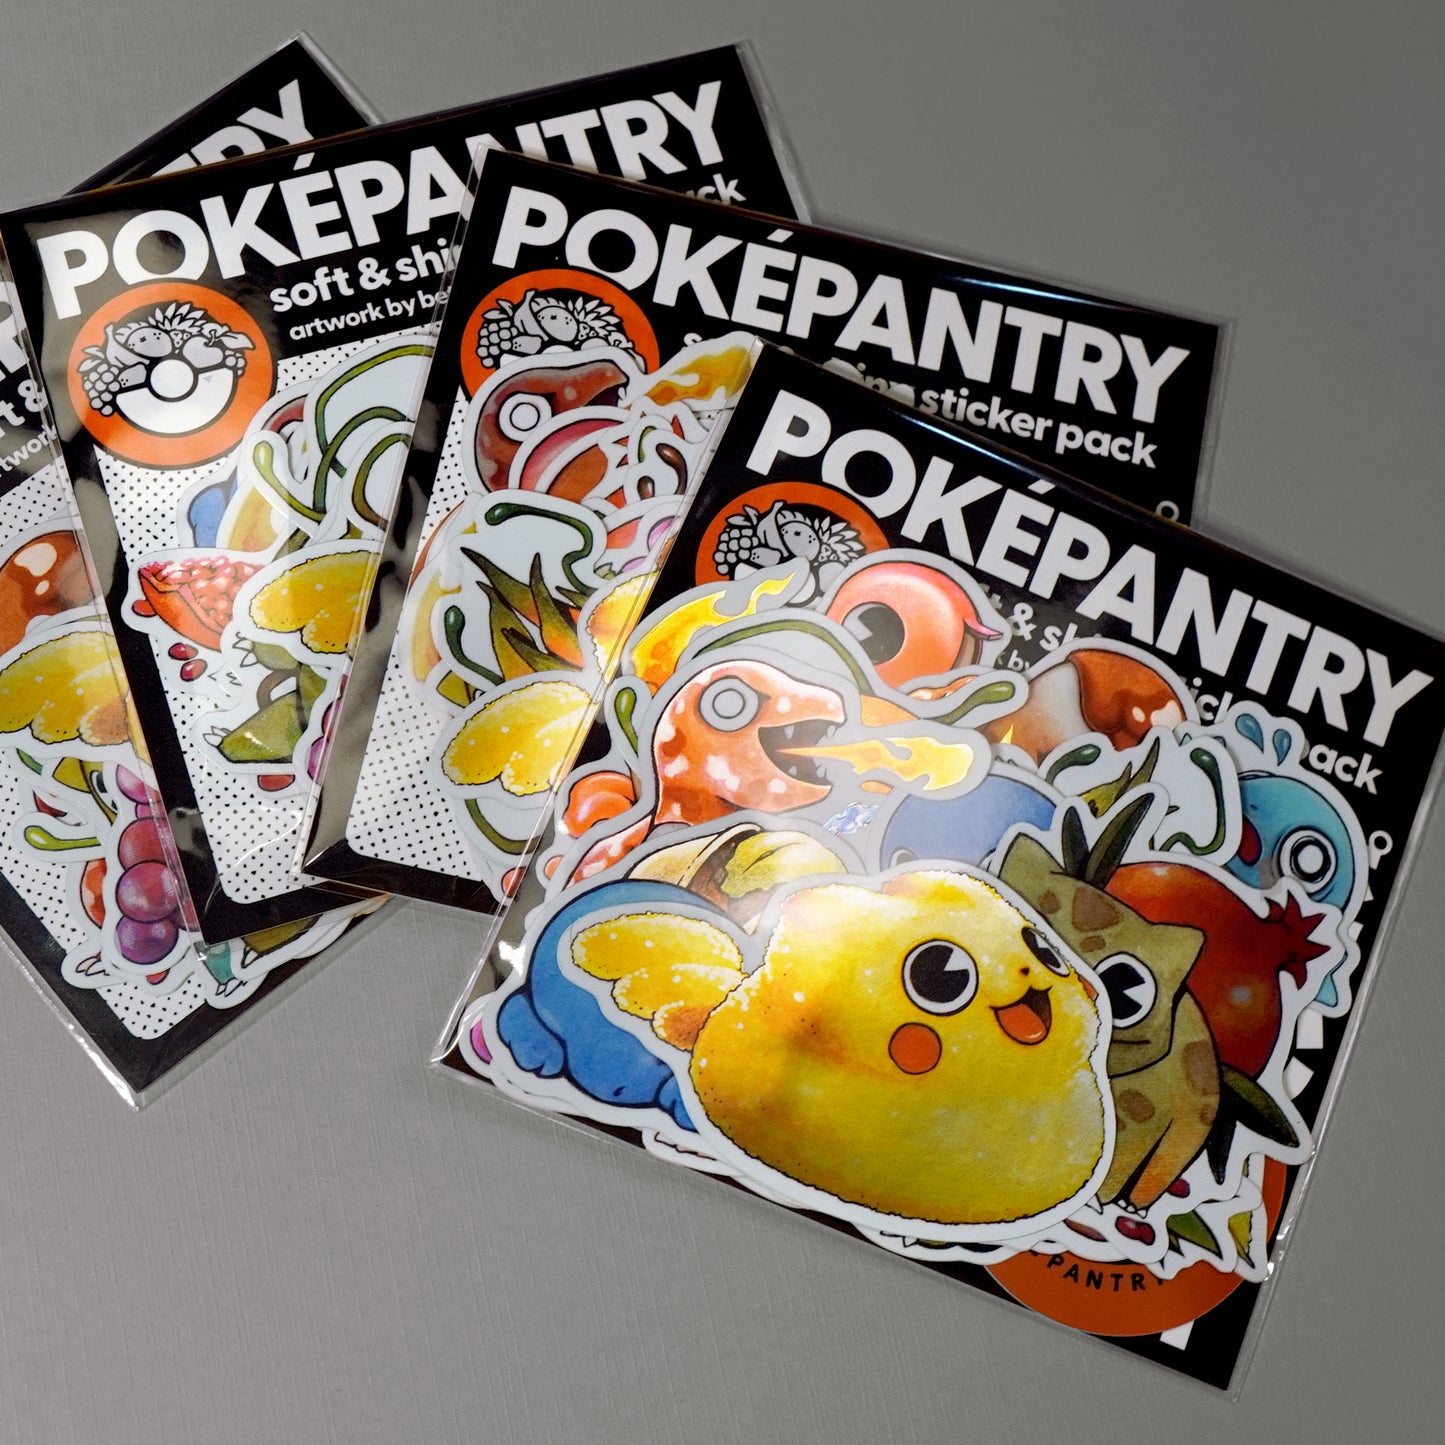 PokéPantry Starter Sticker Pack